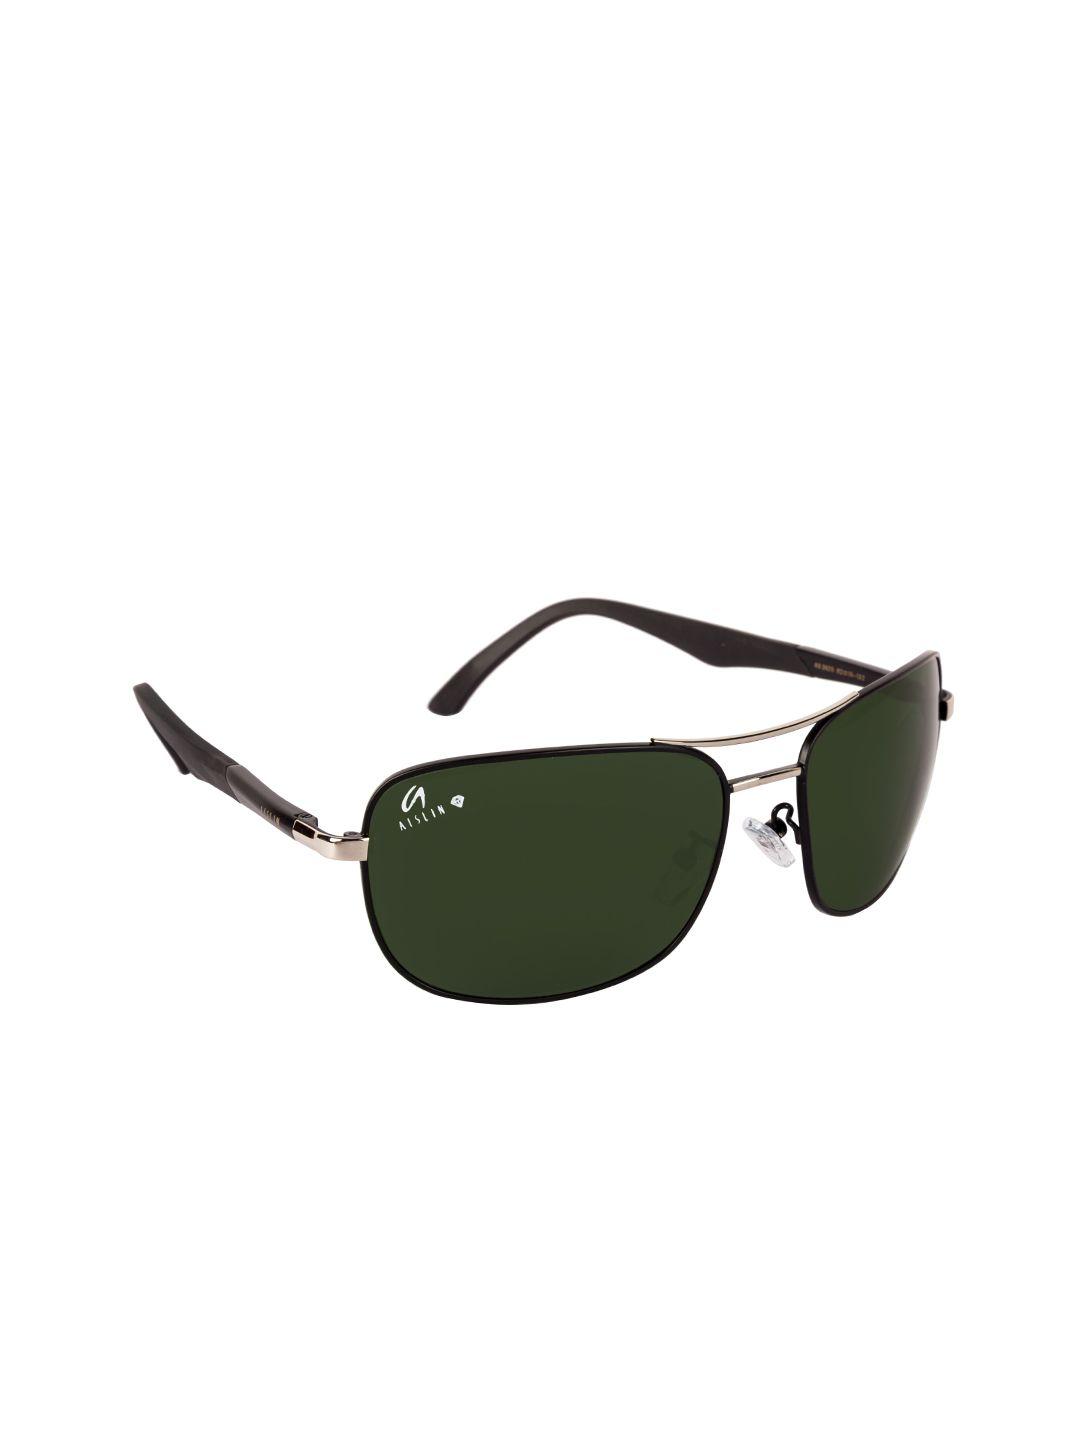 aislin men green lens & black wayfarer sunglasses with uv protected lens